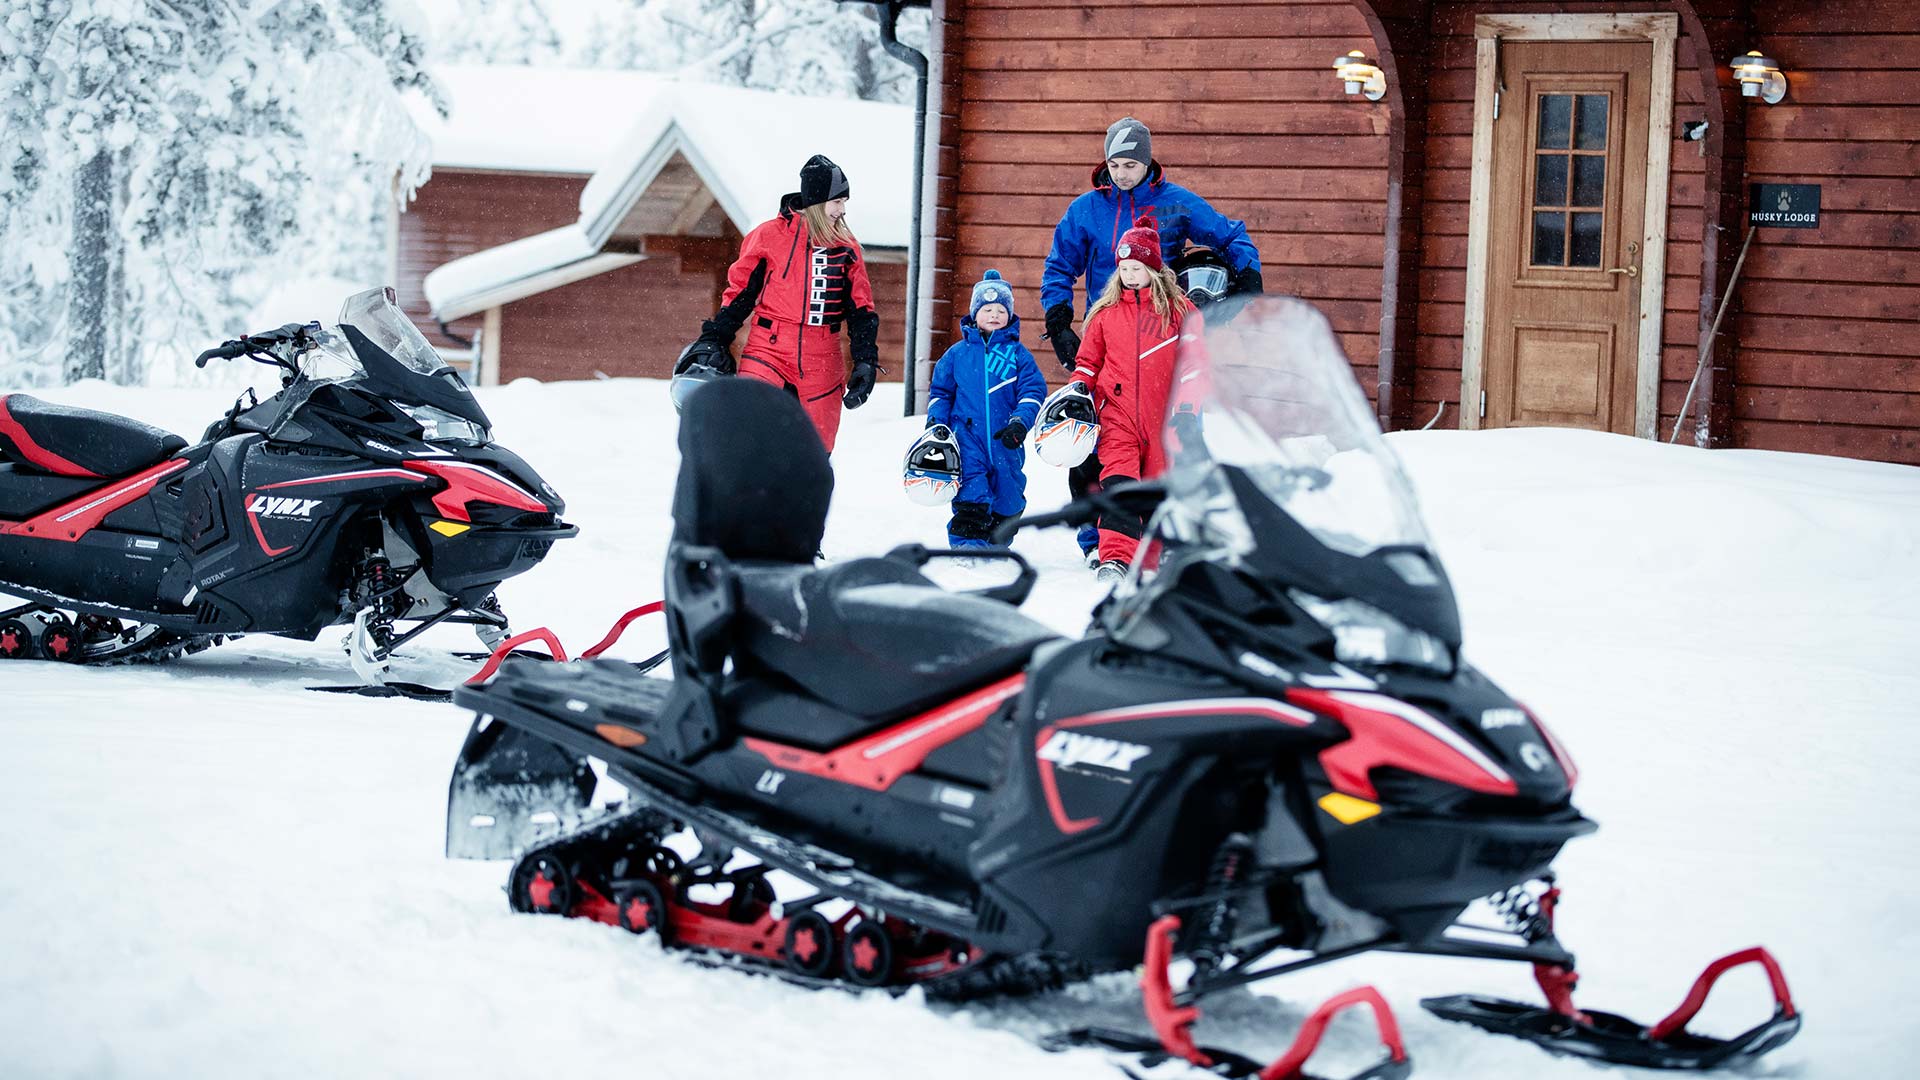 Rodina si ide jazdiť na snežných skútroch Lynx Adventure